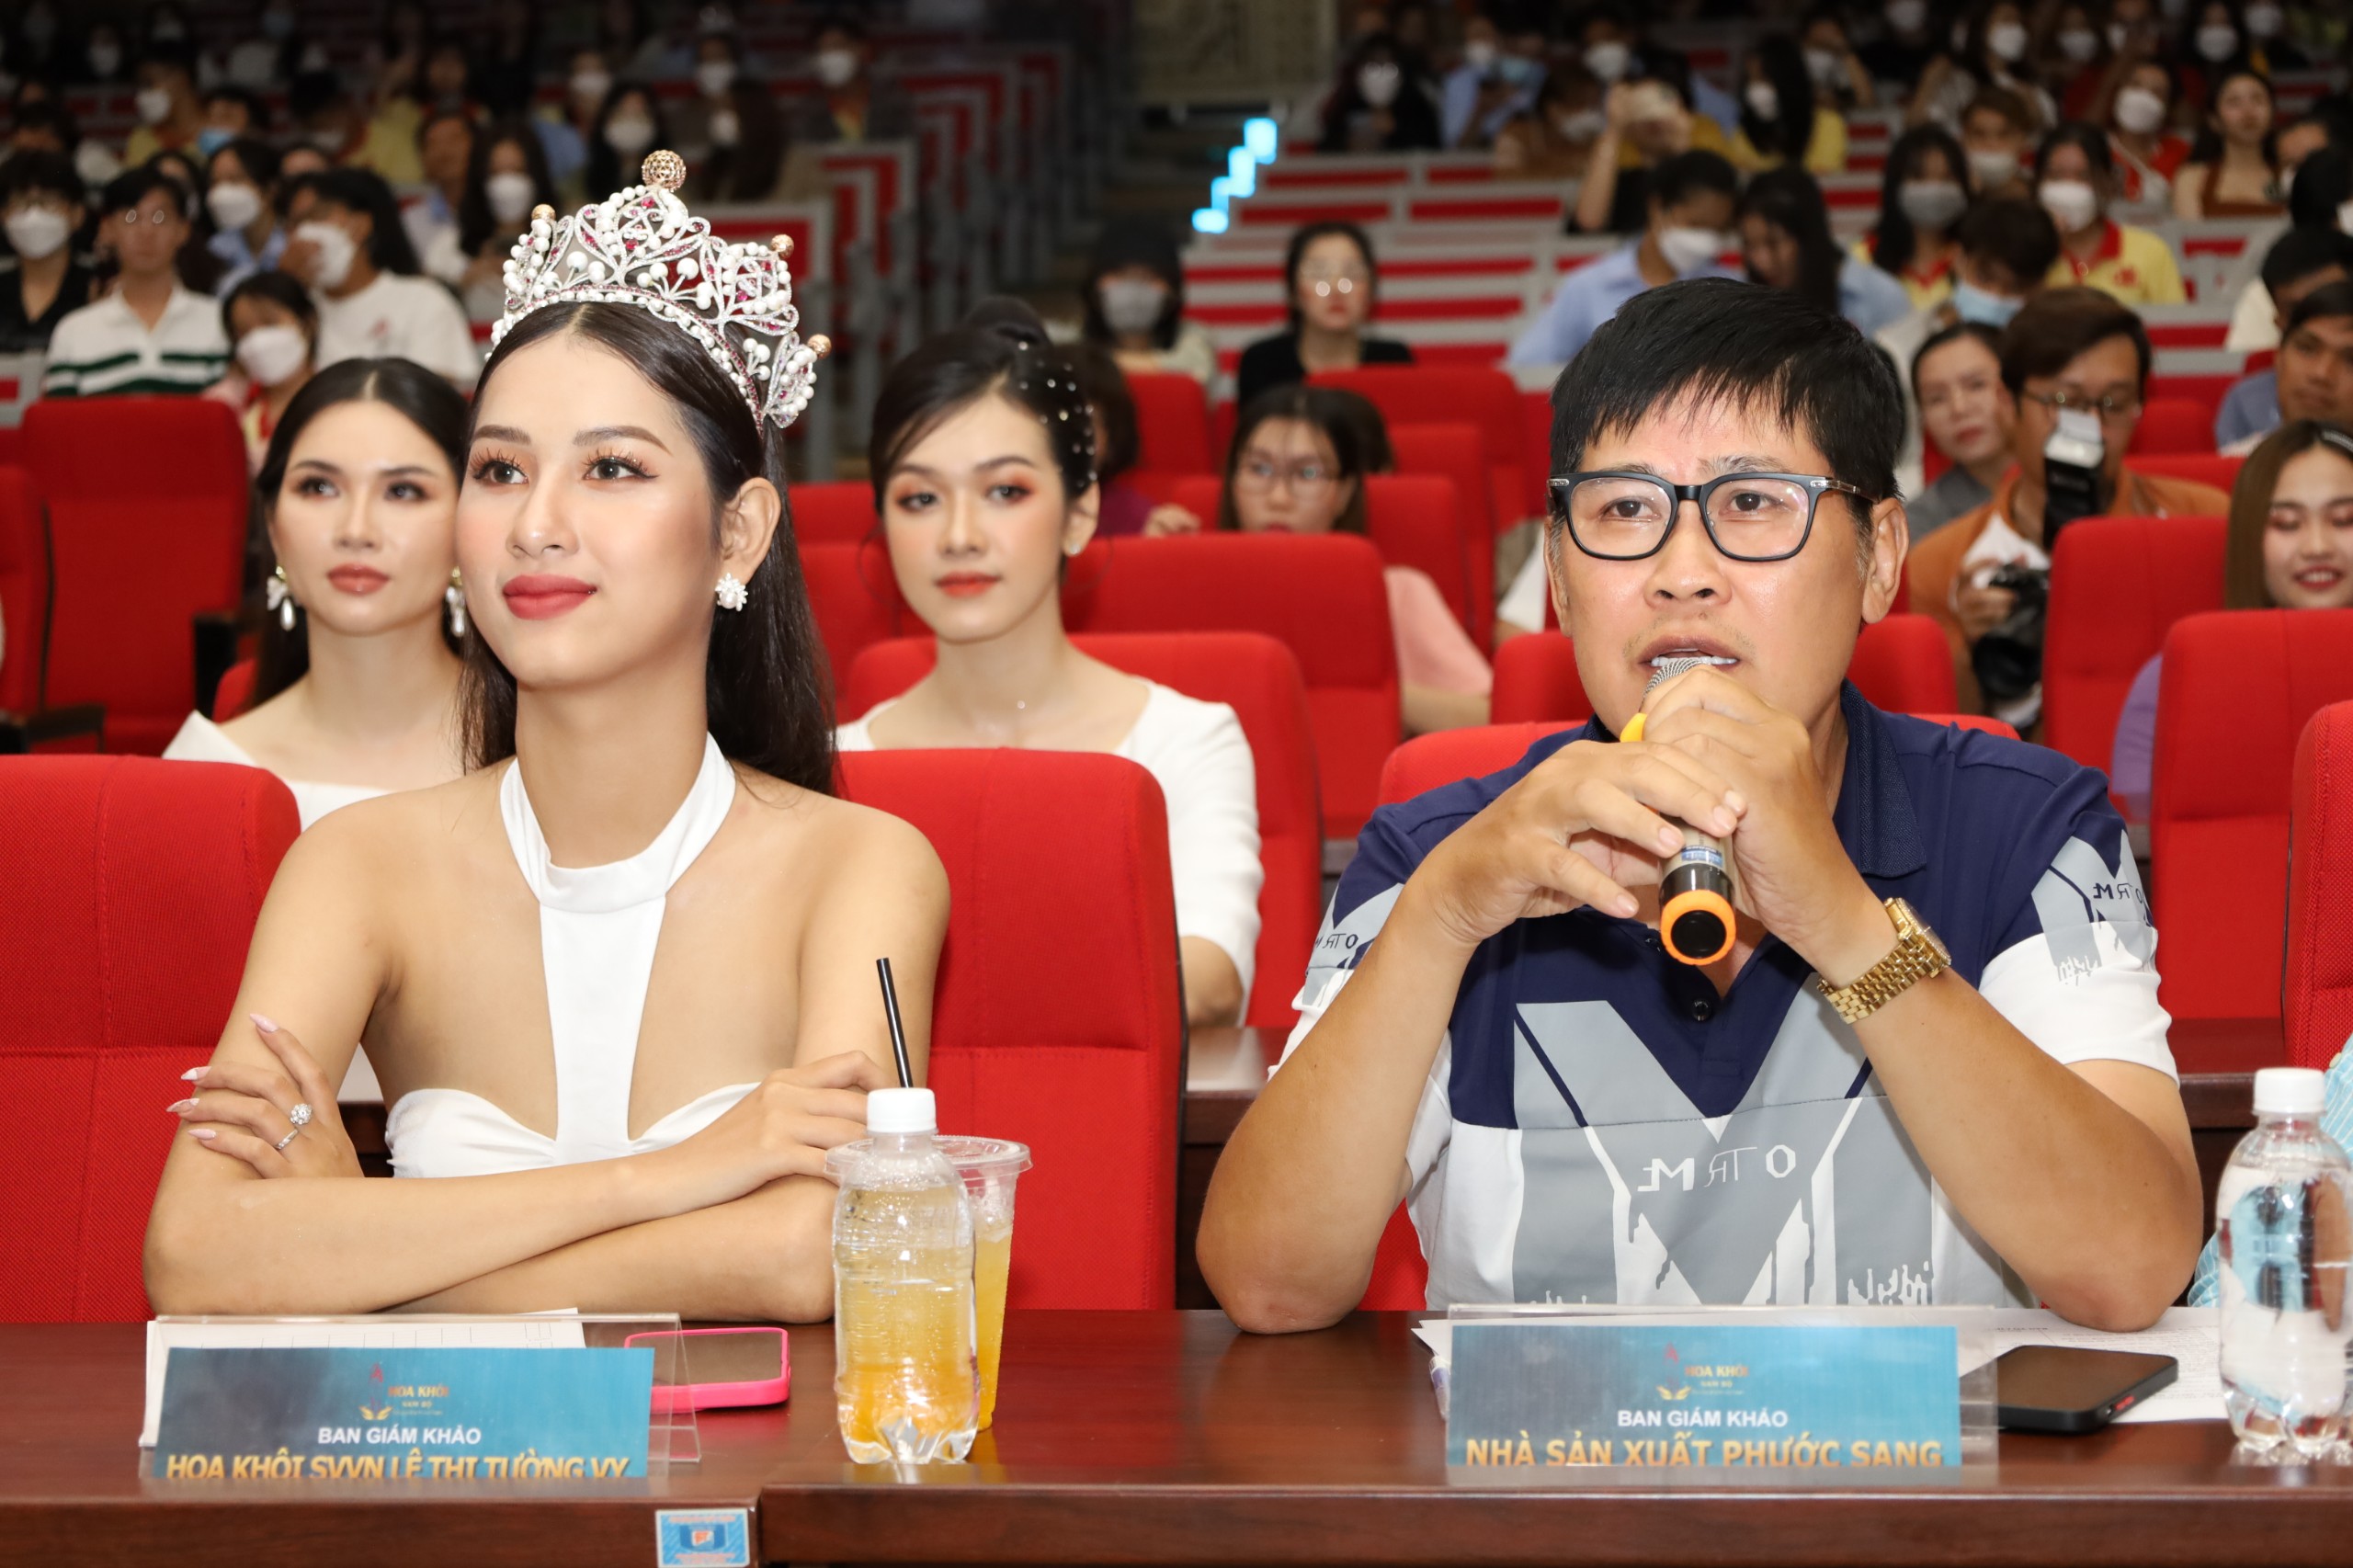 Nhà sản xuất phim Phước Sang đặt câu hỏi cho thí sinh.